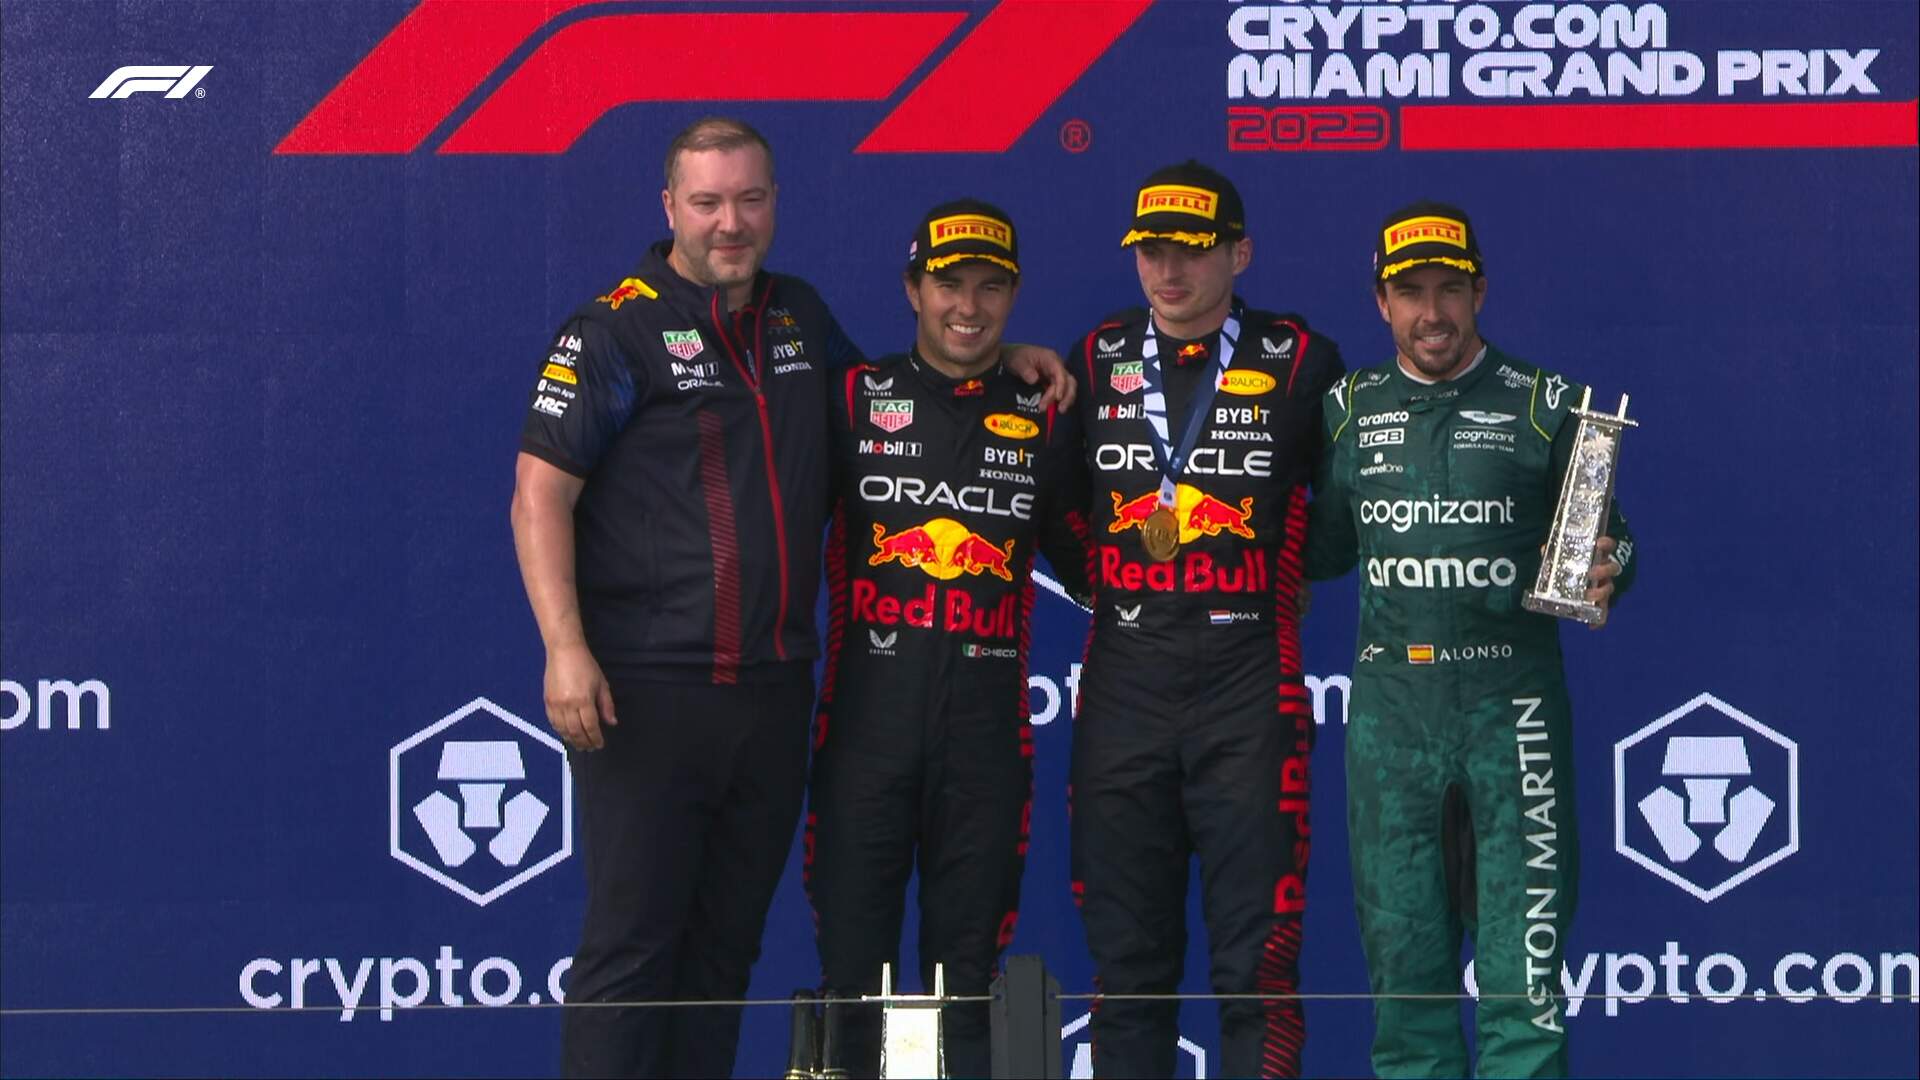 Após largar em 9º lugar, Verstappen ultrapassa Pérez e vence o GP de Miami